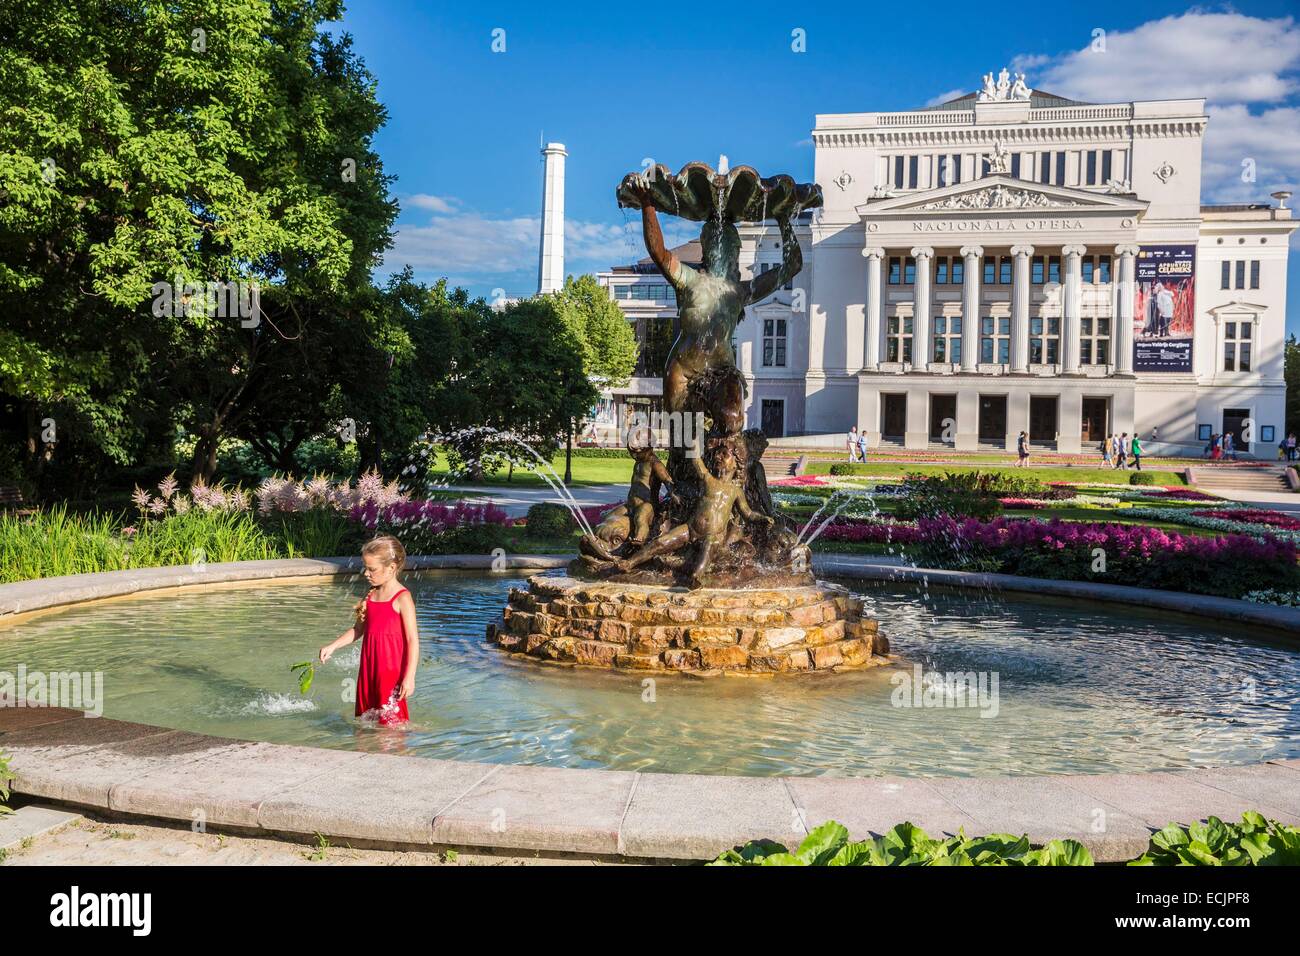 Latvia (Baltic States), Riga, European capital of culture 2014, National Opera House Stock Photo